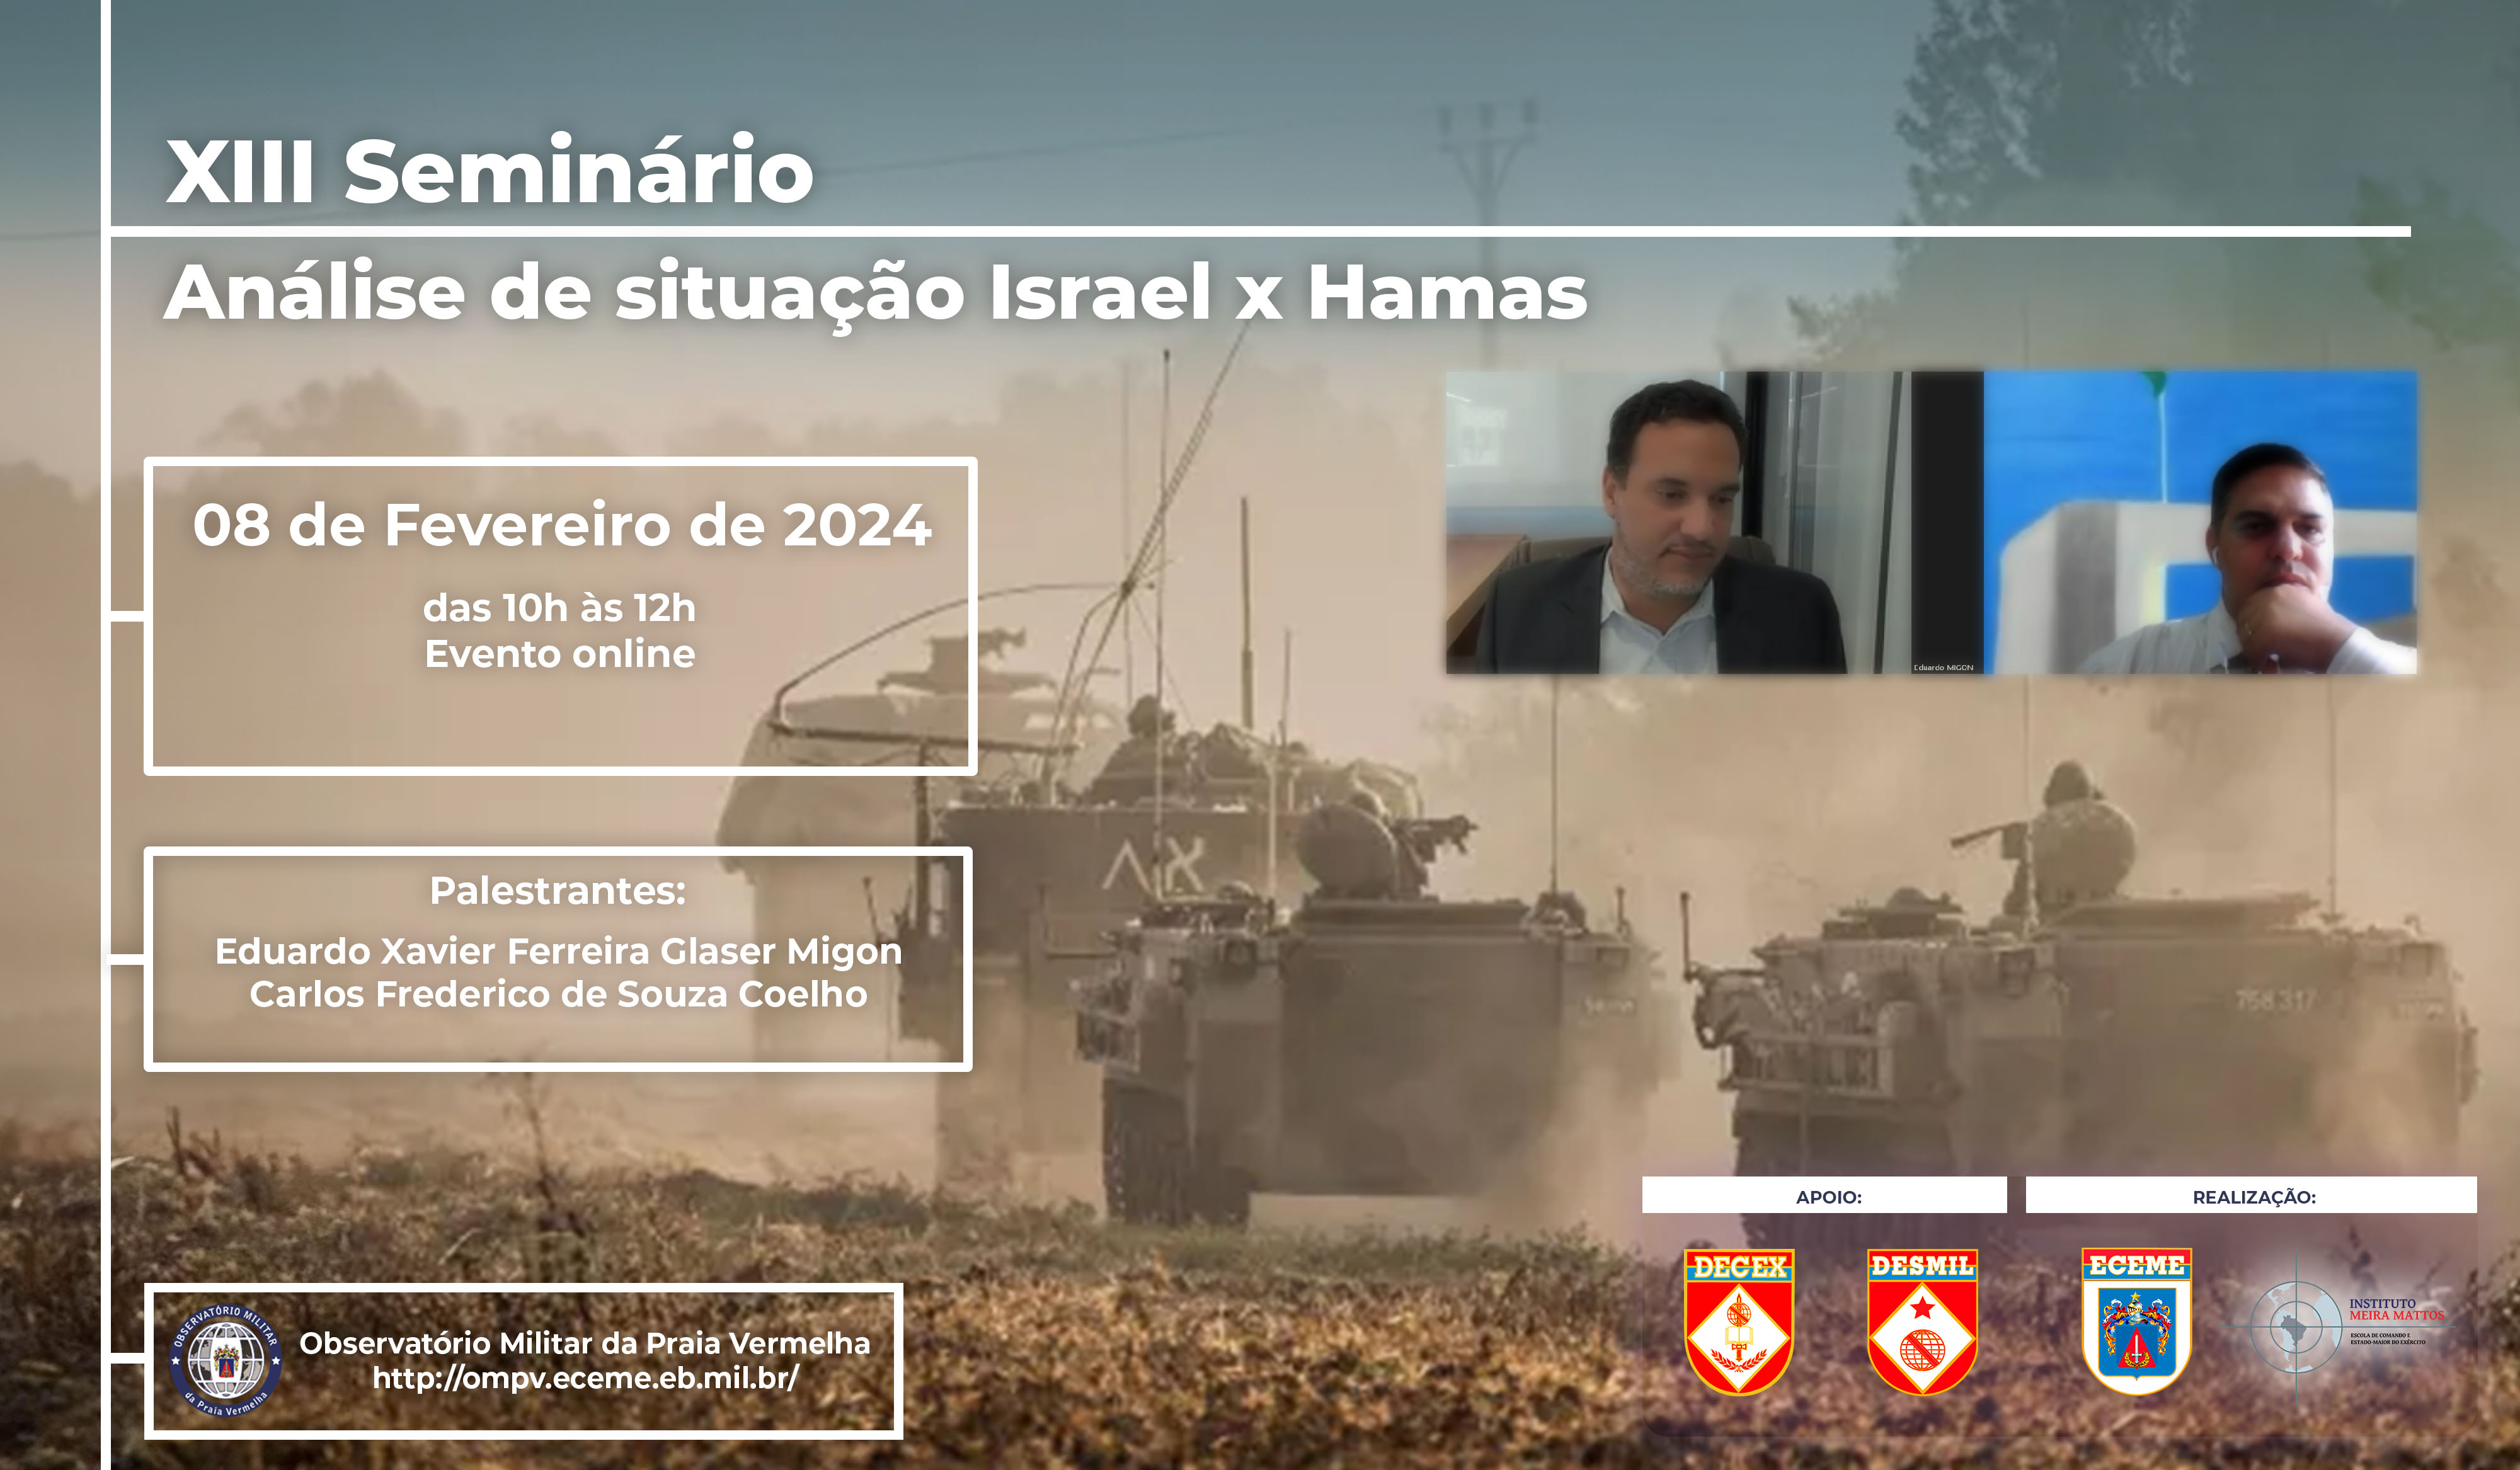 Arte Conflito Israel Hamas 07dez2023 youtube decex